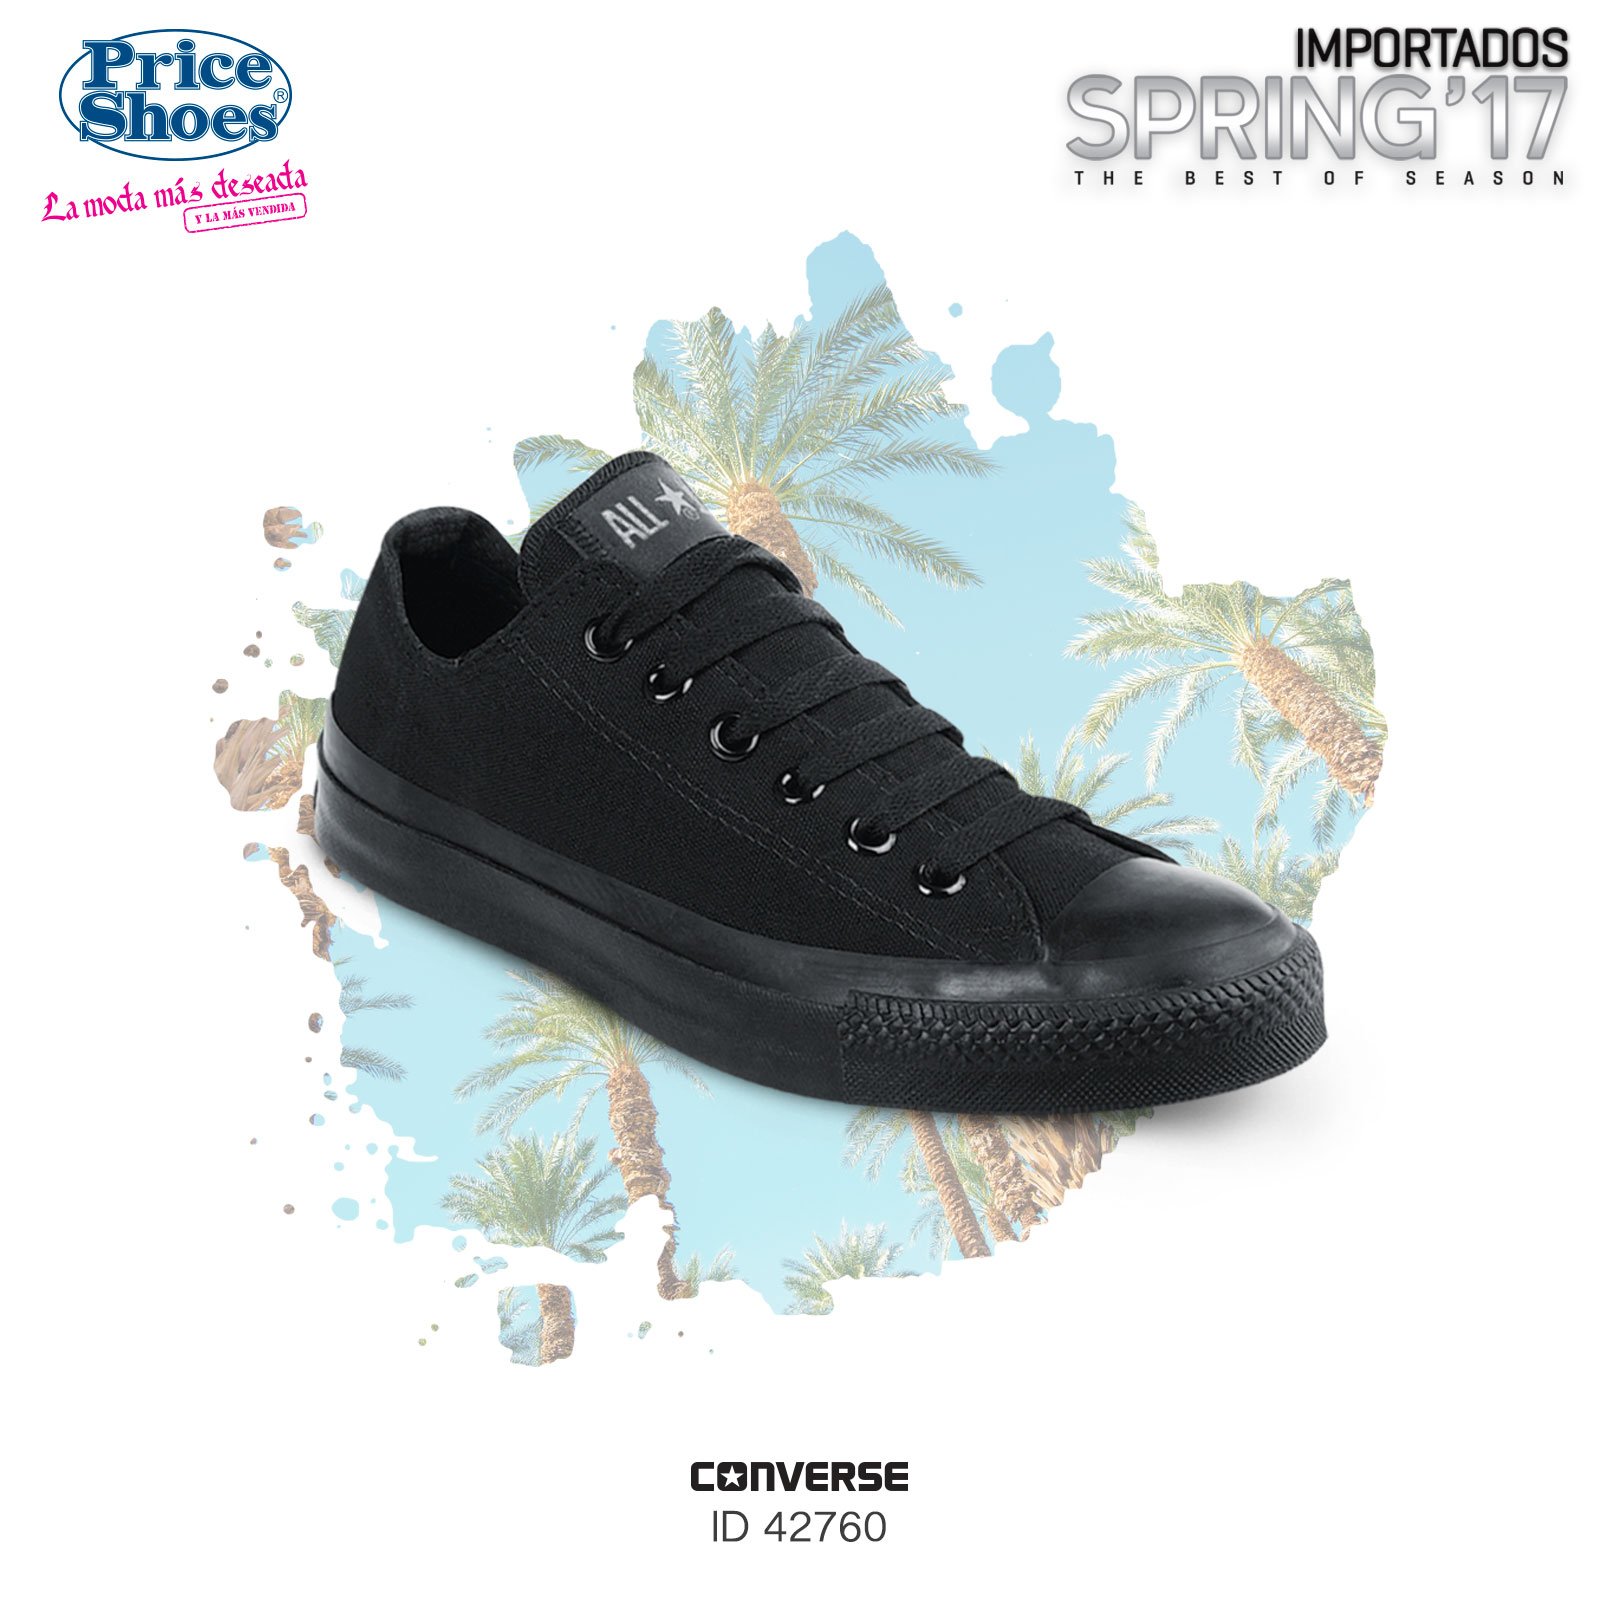 Price Shoes sur Twitter : "#Clásicos e invencibles. #converse #priceshoes  Disponibles aquí ▻https://t.co/GfQoJM1Ilb https://t.co/ql4Taqh589" / Twitter